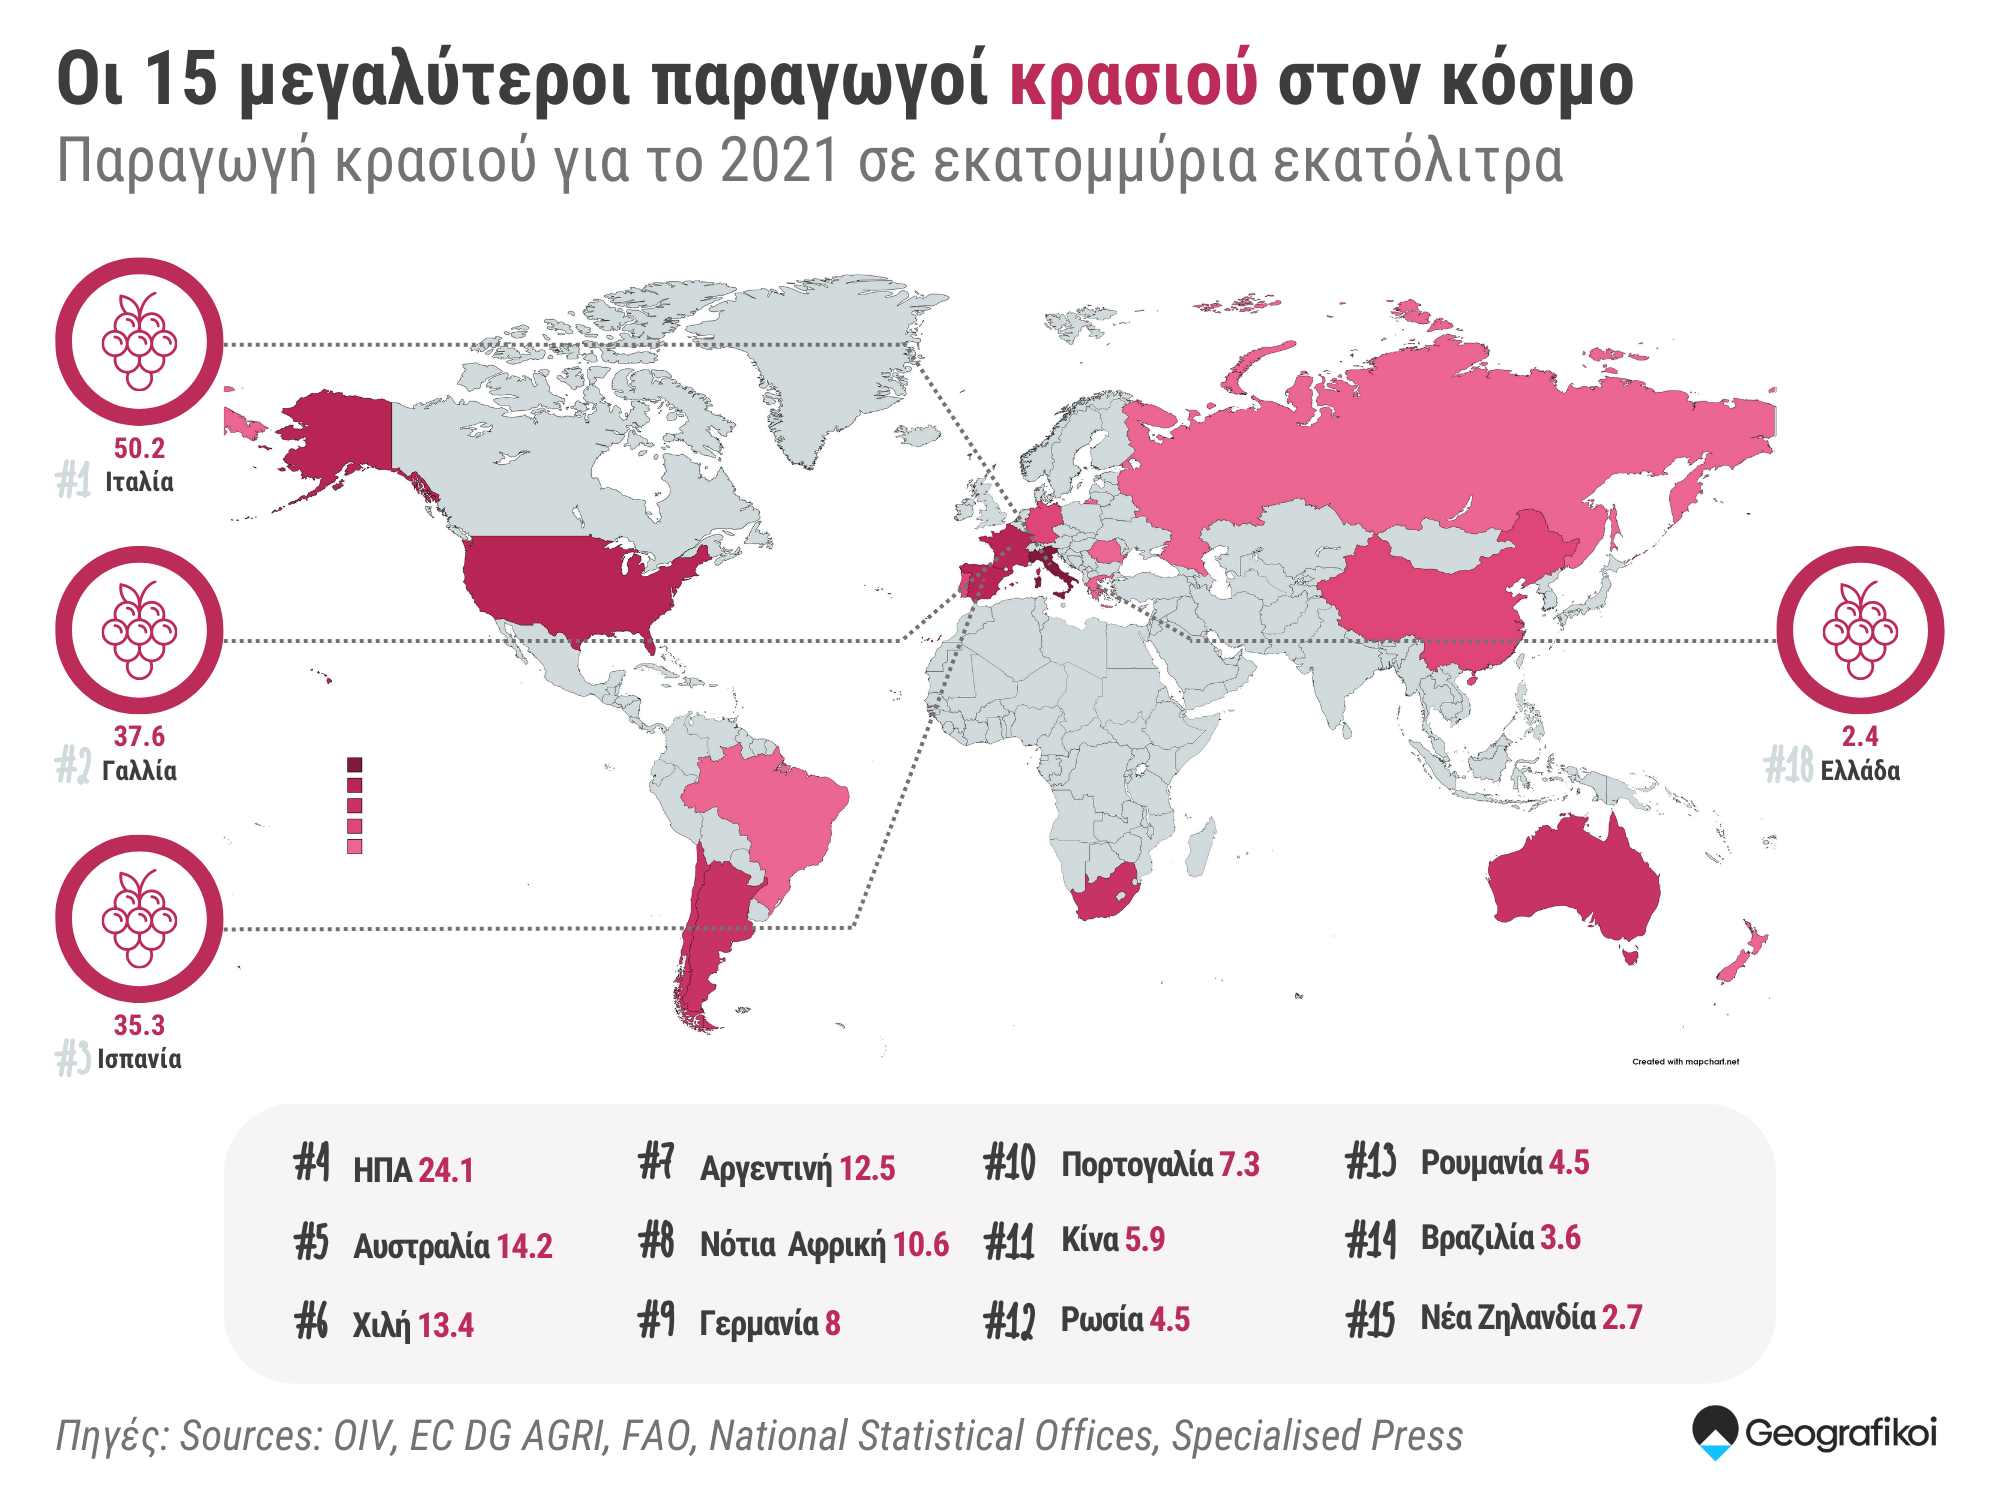 Οι 15 χώρες με την μεγαλύτερη παραγωγή #κρασιού στον κόσμο για το 2021. Η Ελλάδα βρίσκεται στην 18η θέση.